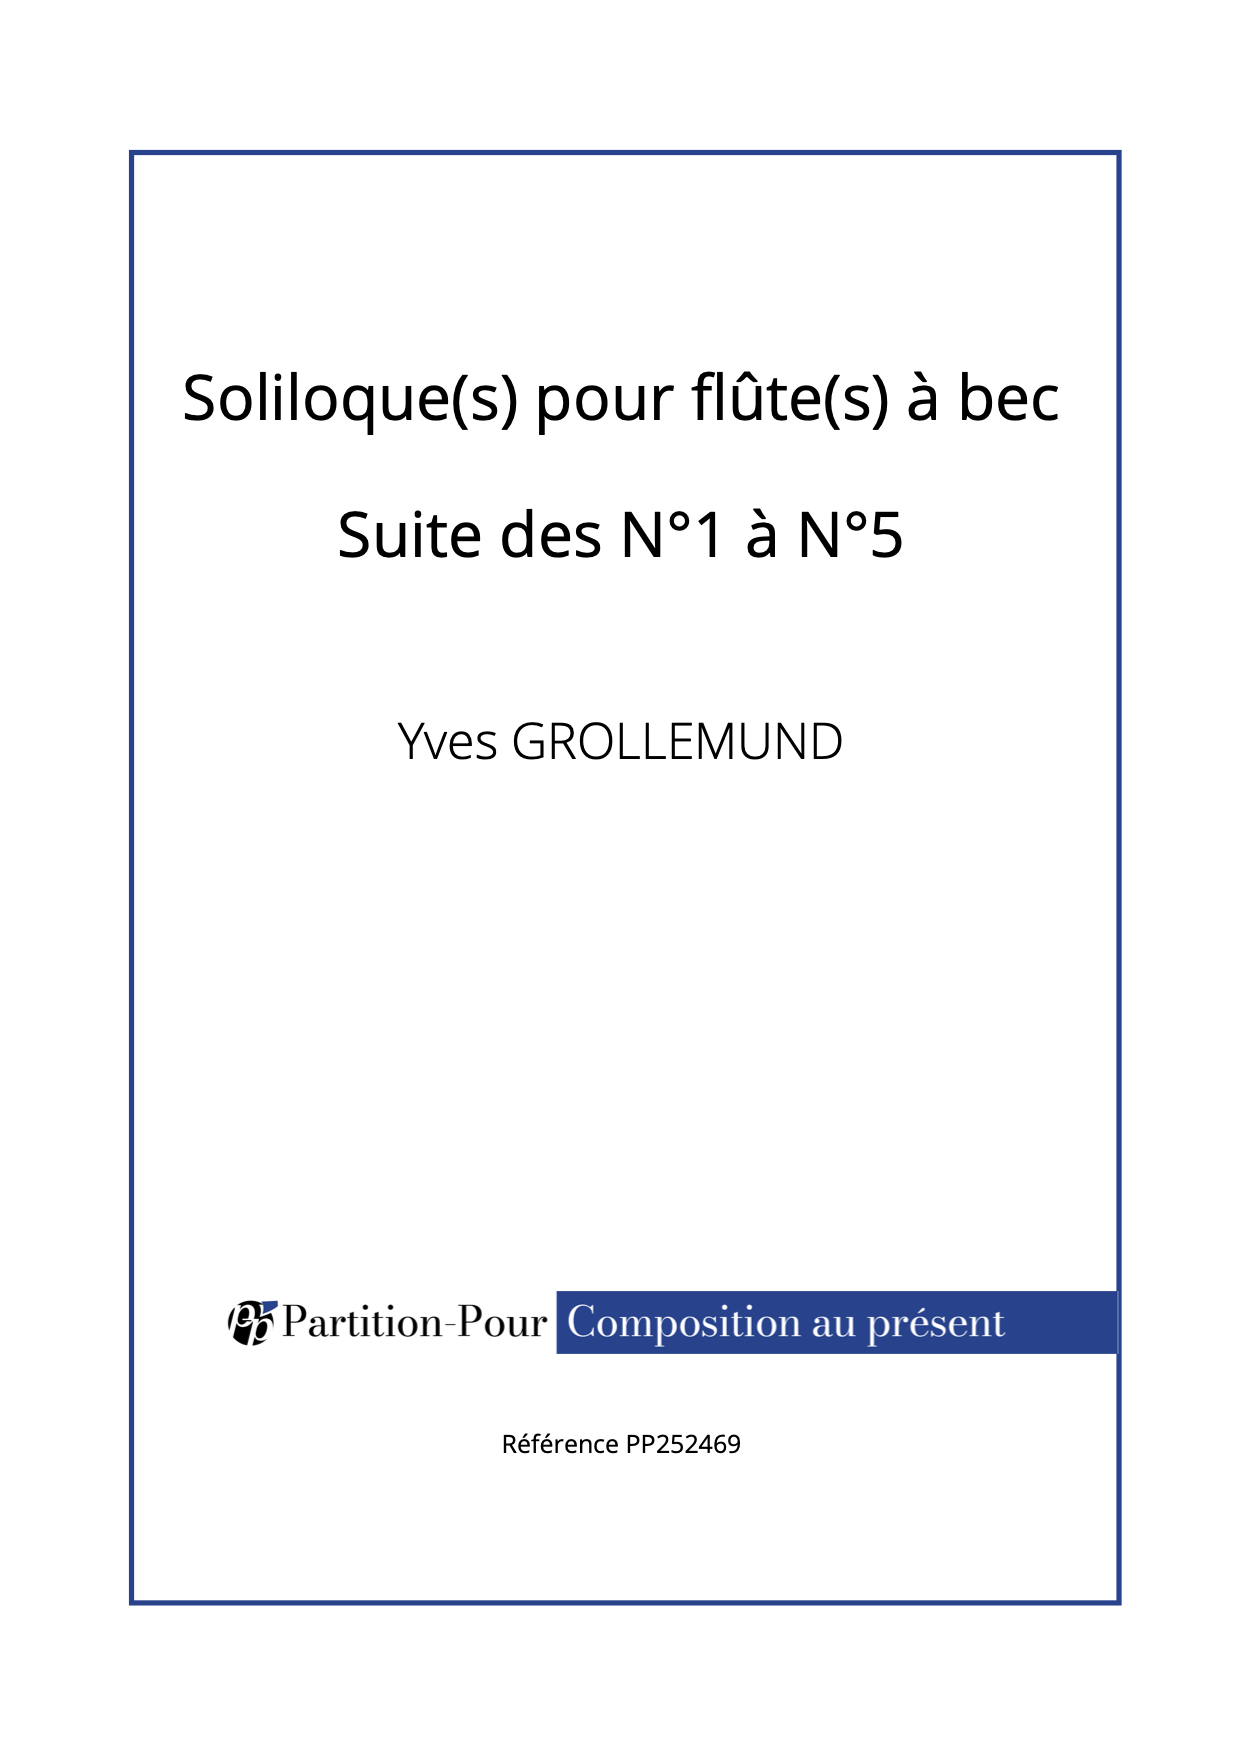 PP252469 - Grollemund Y - Soliloque(s) pour flûte(s) à bec - Suite des N°1 à N°5 -présentation